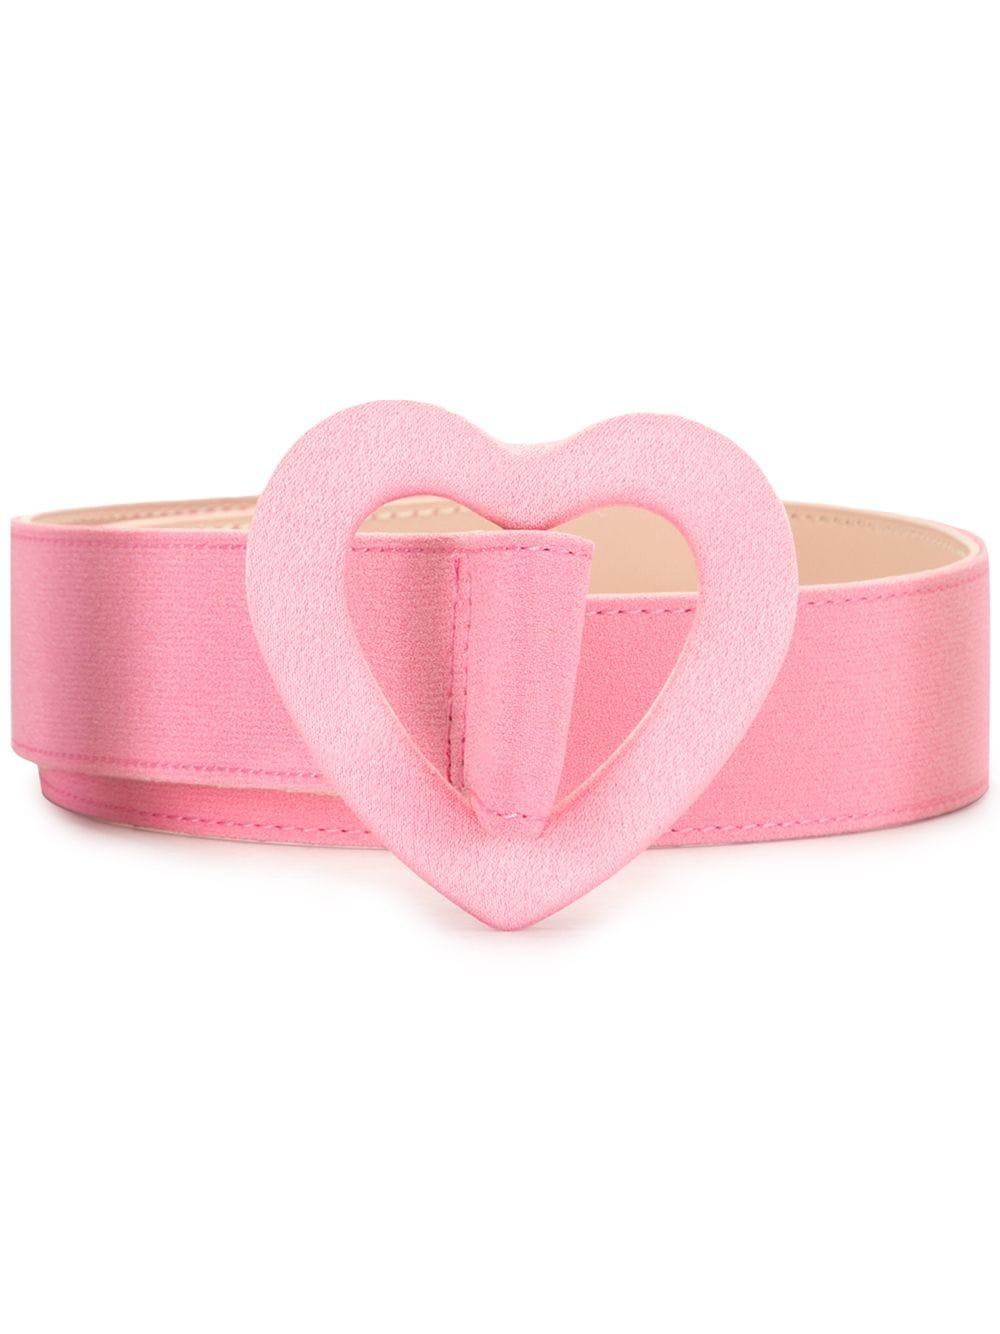 Paule Ka Heart Shape-buckle Belt in Pink | Lyst Australia